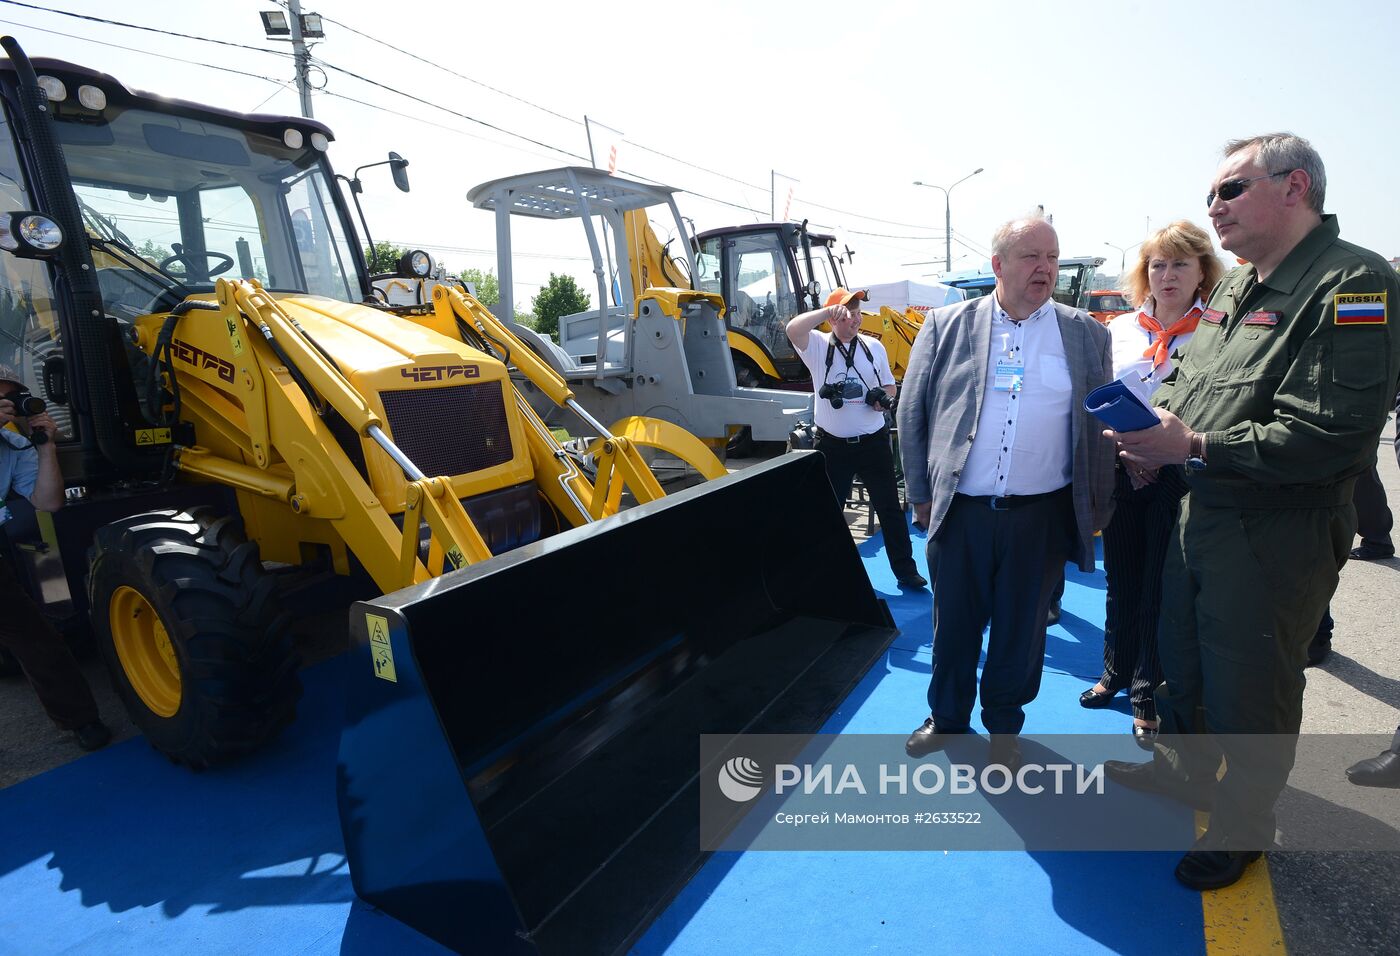 Вице-премьер правительства РФ Д.Рогозин посетил III Владимирский экономический форум 2015